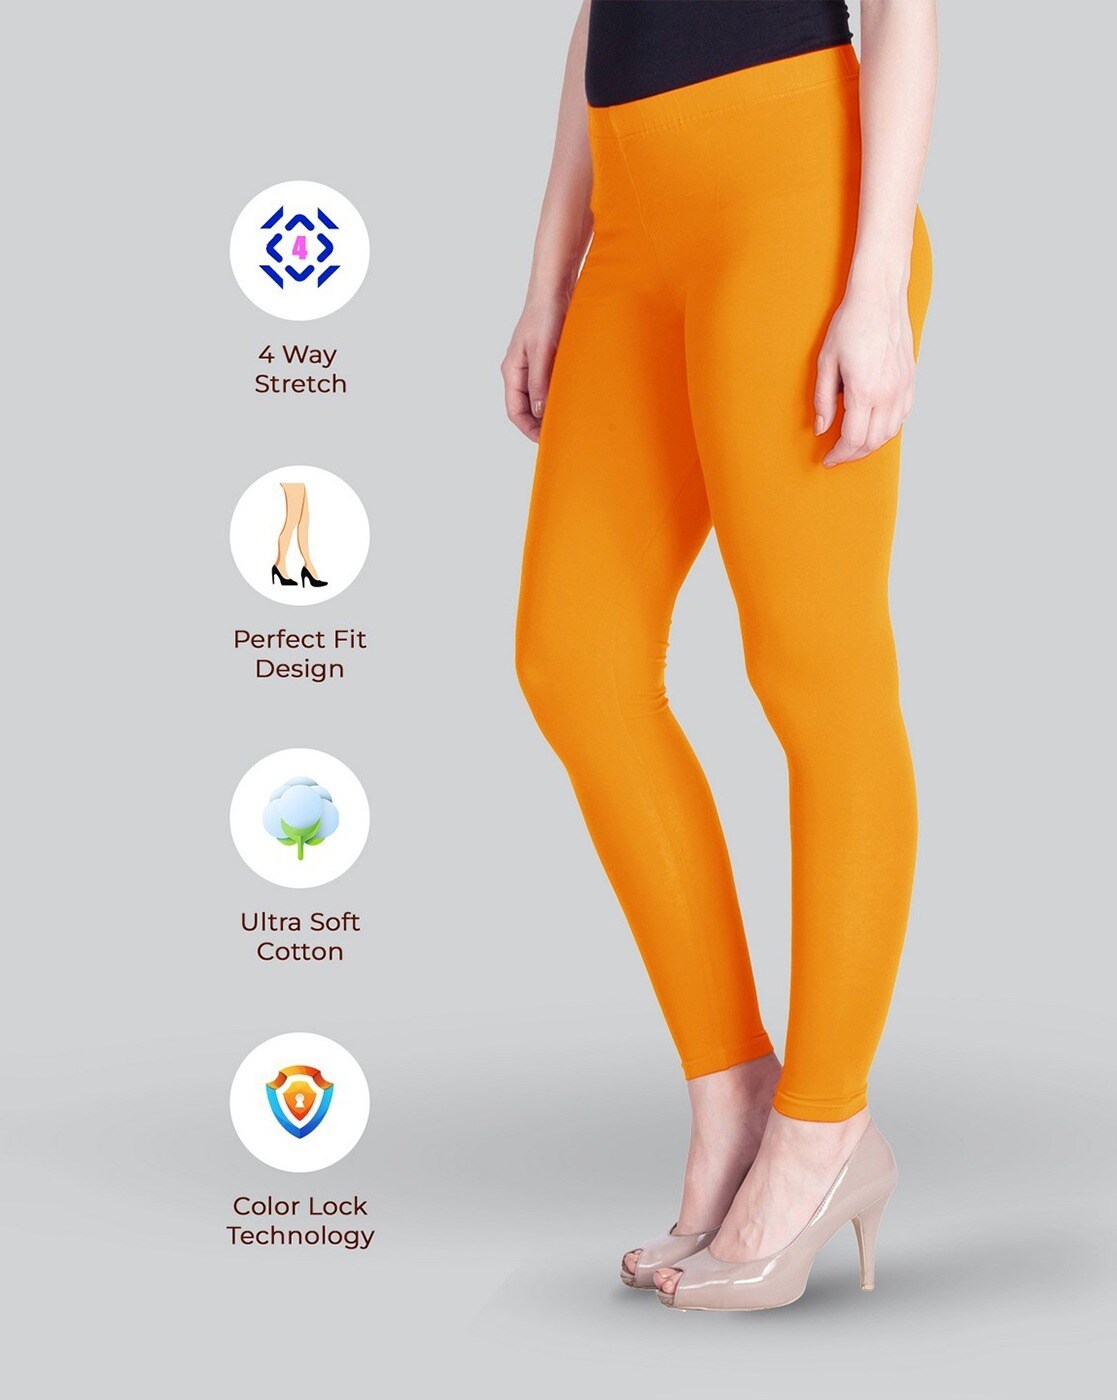 Buy Orange Leggings for Women by LYRA Online